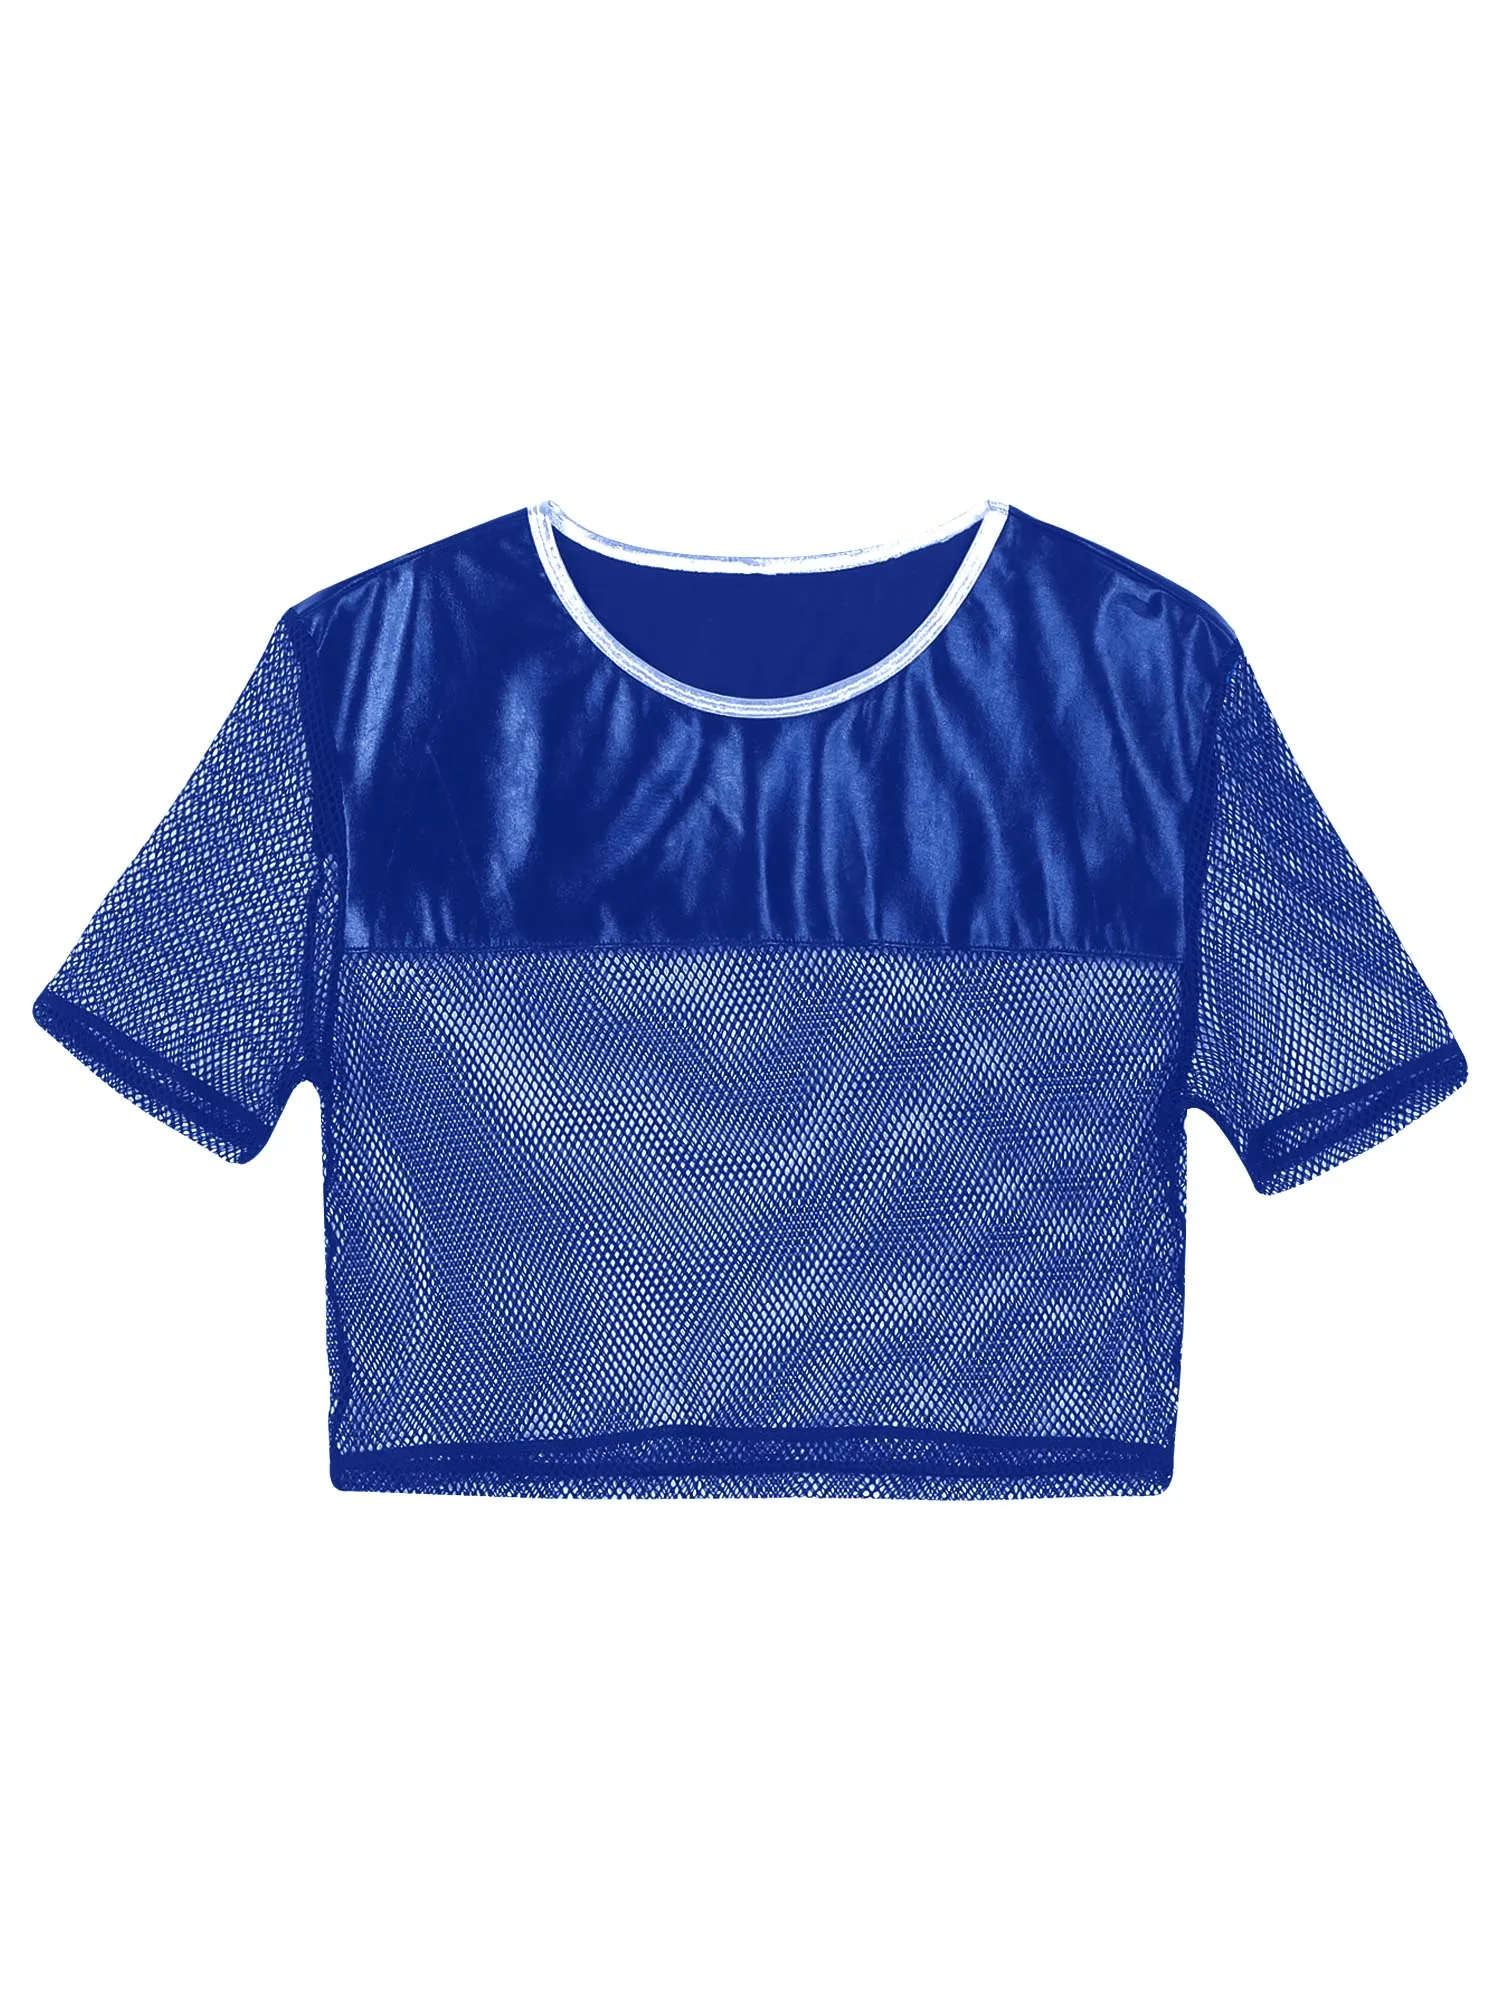 Mens de Moda Respirabil cu Maneci Scurte T-Shirt Design Mozaic HIIT T-shirt Vedea prin Plasa Mesh Crop Top Jogging, Fitness 5